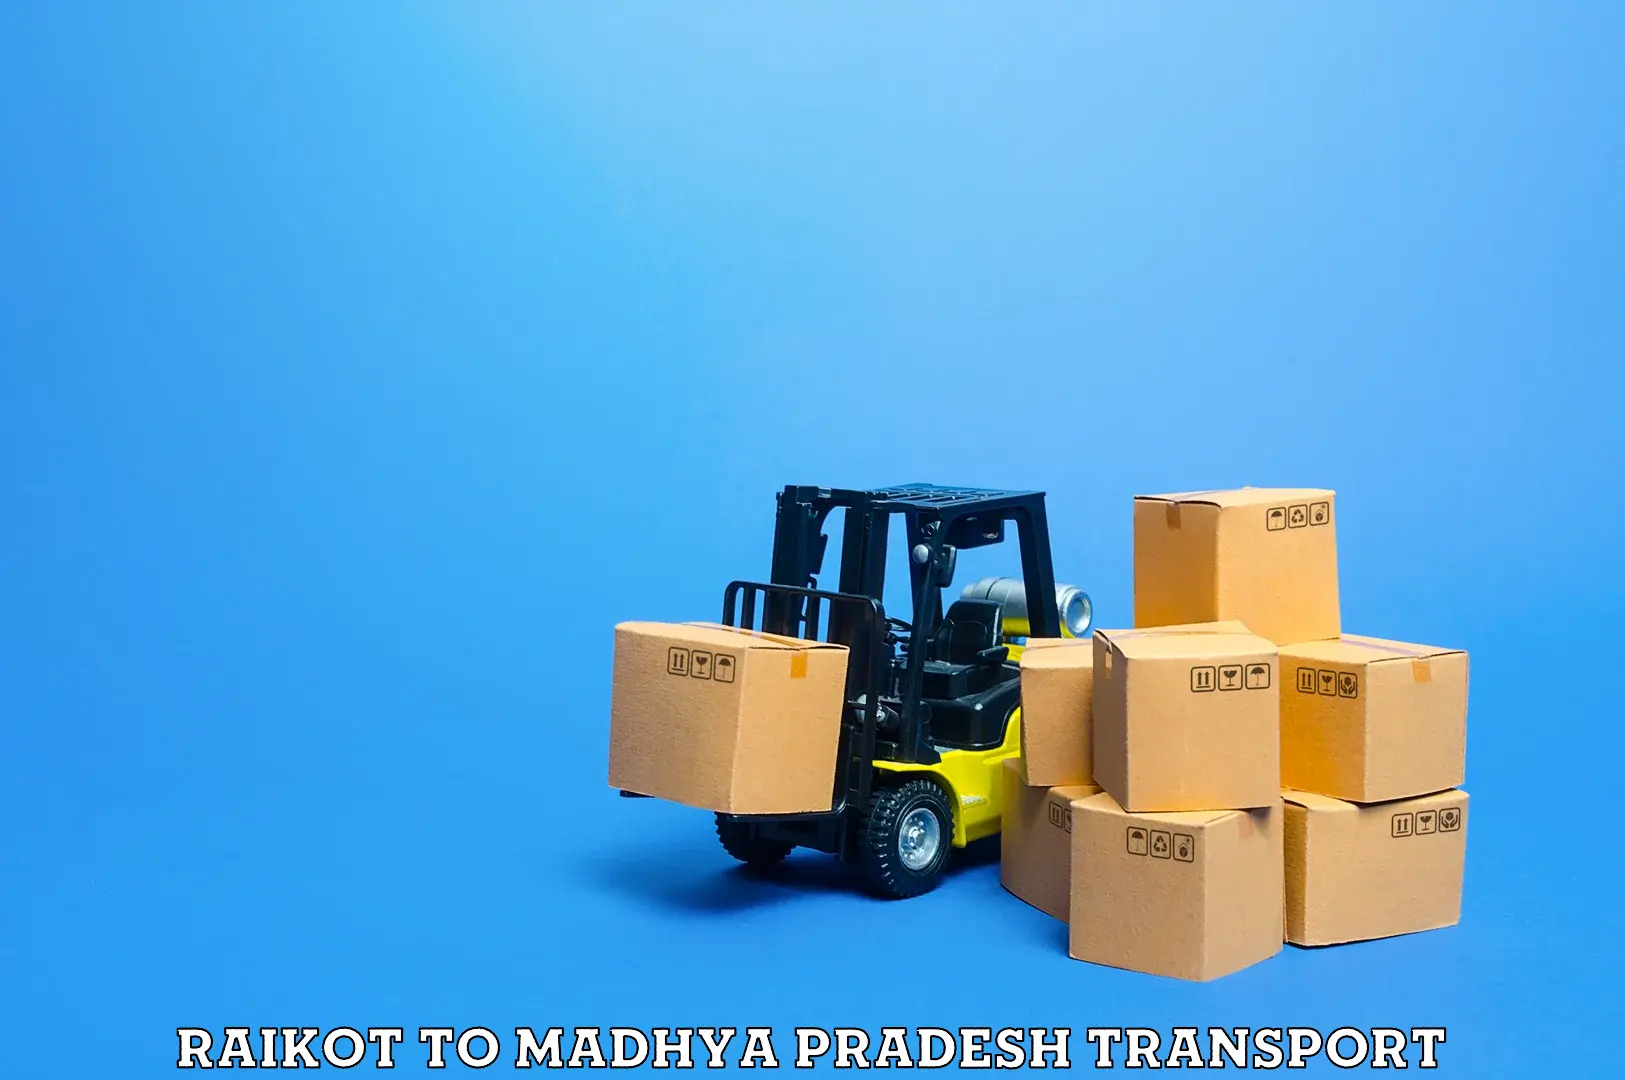 Furniture transport service Raikot to Banda Sagar